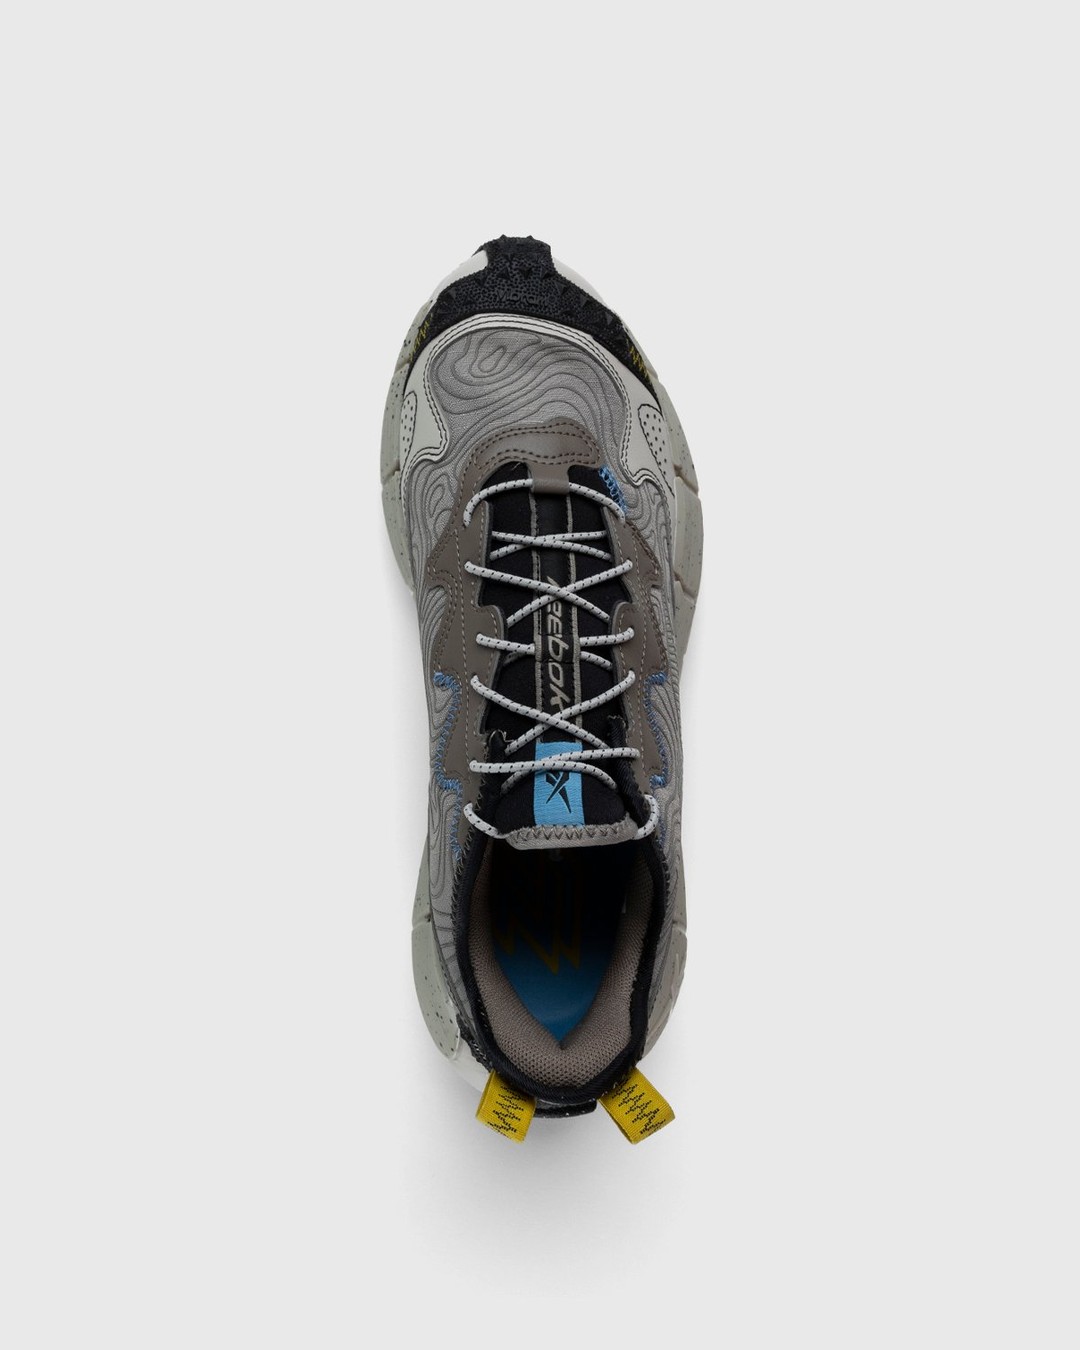 Reebok – Zig Kinetica II Edge Boulder Grey / Essential Blue / Sulfur Green - Low Top Sneakers - Grey - Image 5